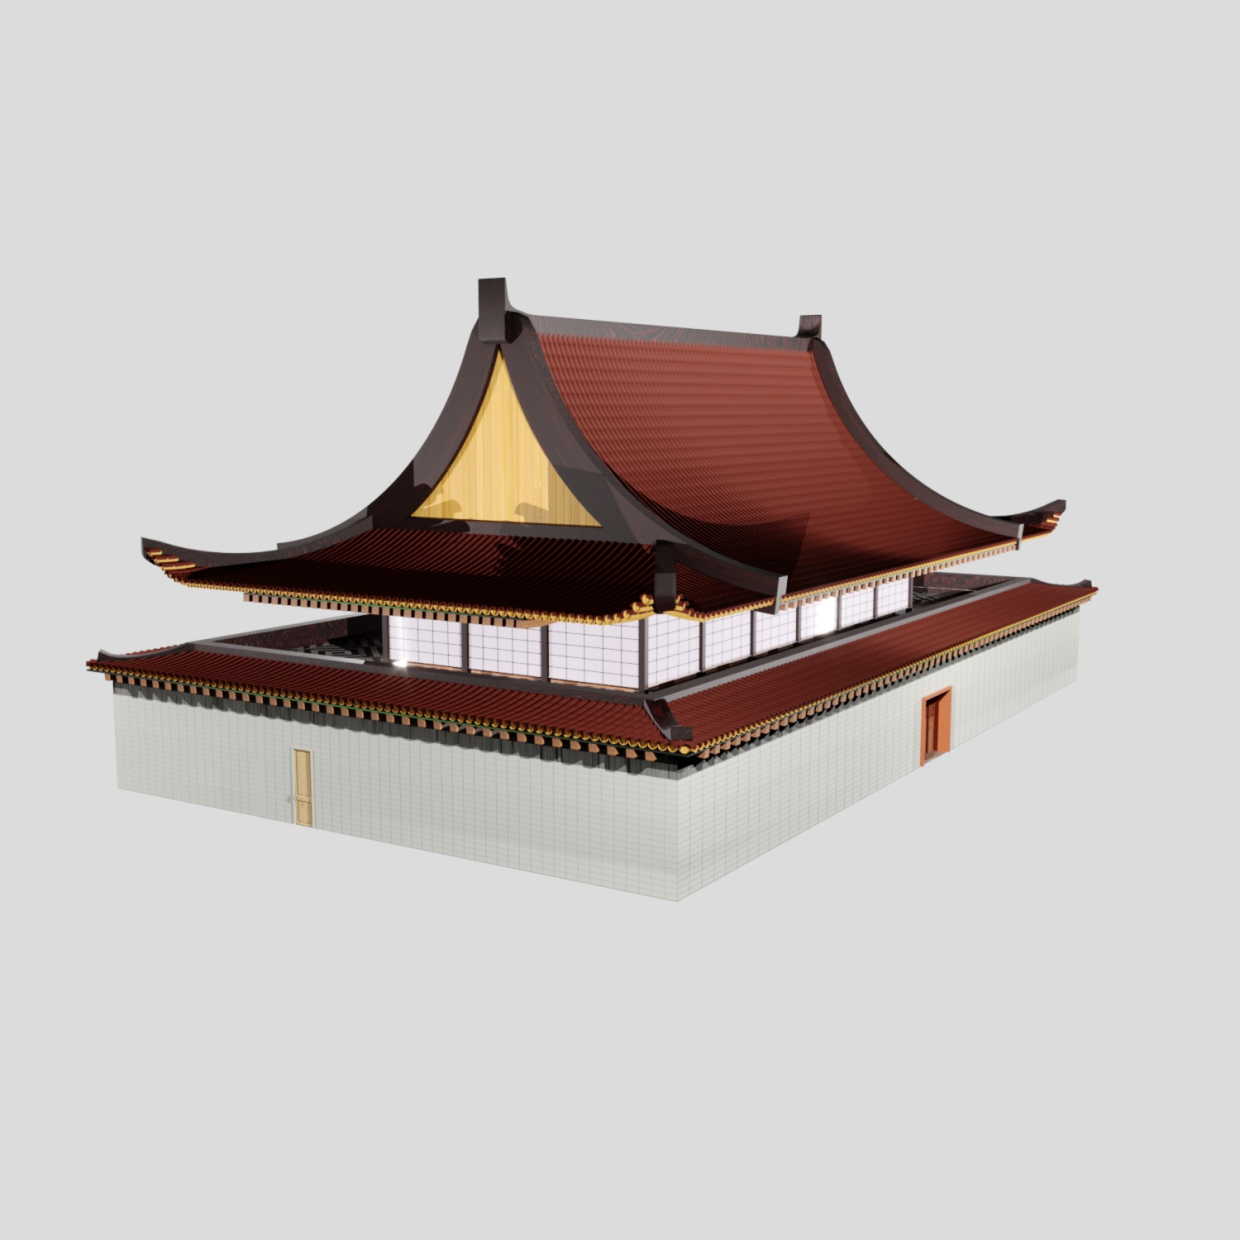 चीनी शैली की इमारत 3d max Corona render 7 में प्रस्तुत छवि